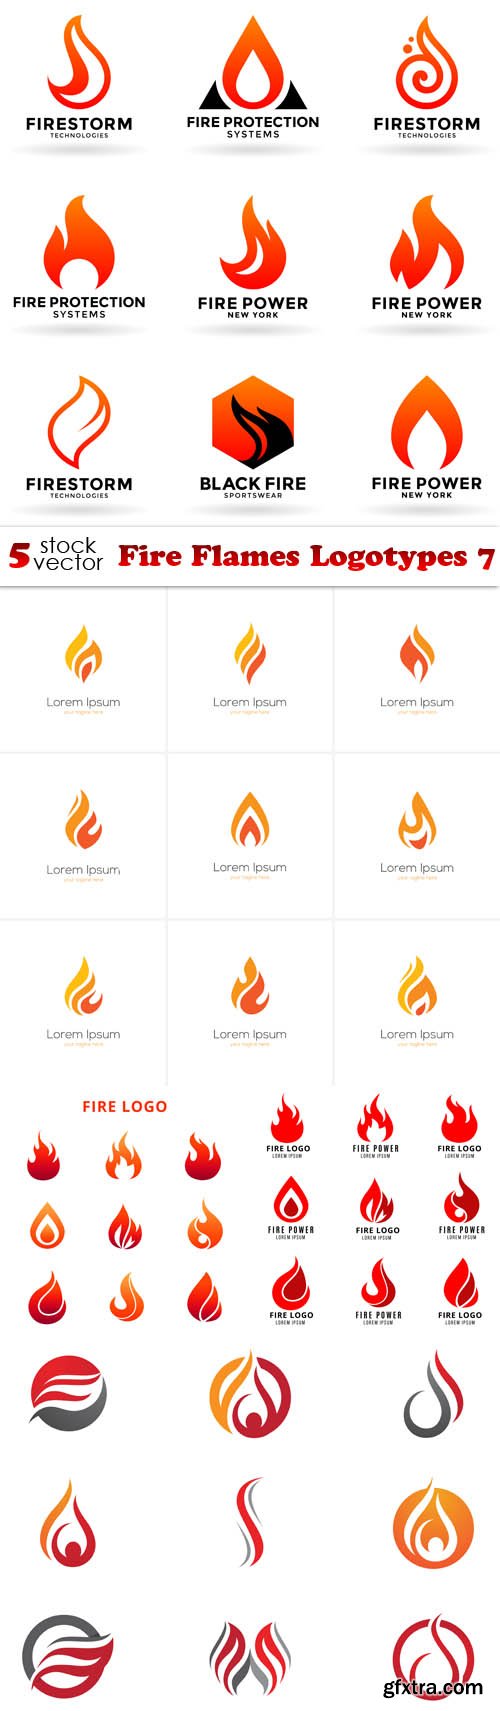 Vectors - Fire Flames Logotypes 7